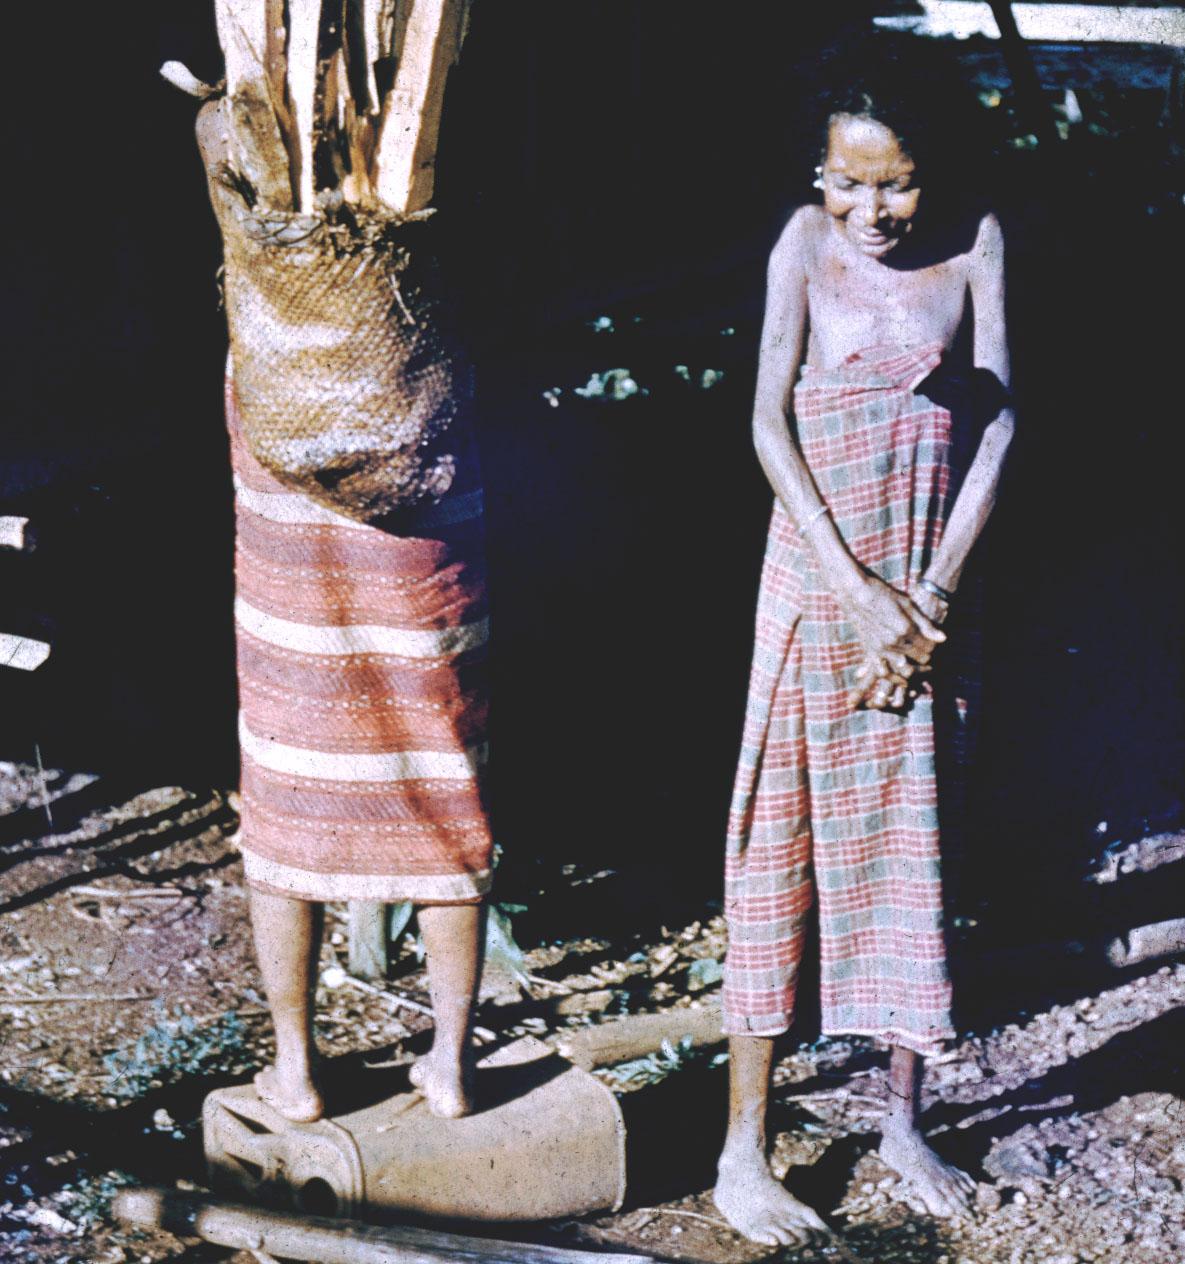 BD/144/202 - 
Geposeerde groepsfoto twee vrouwen, een met bos hout op rug
